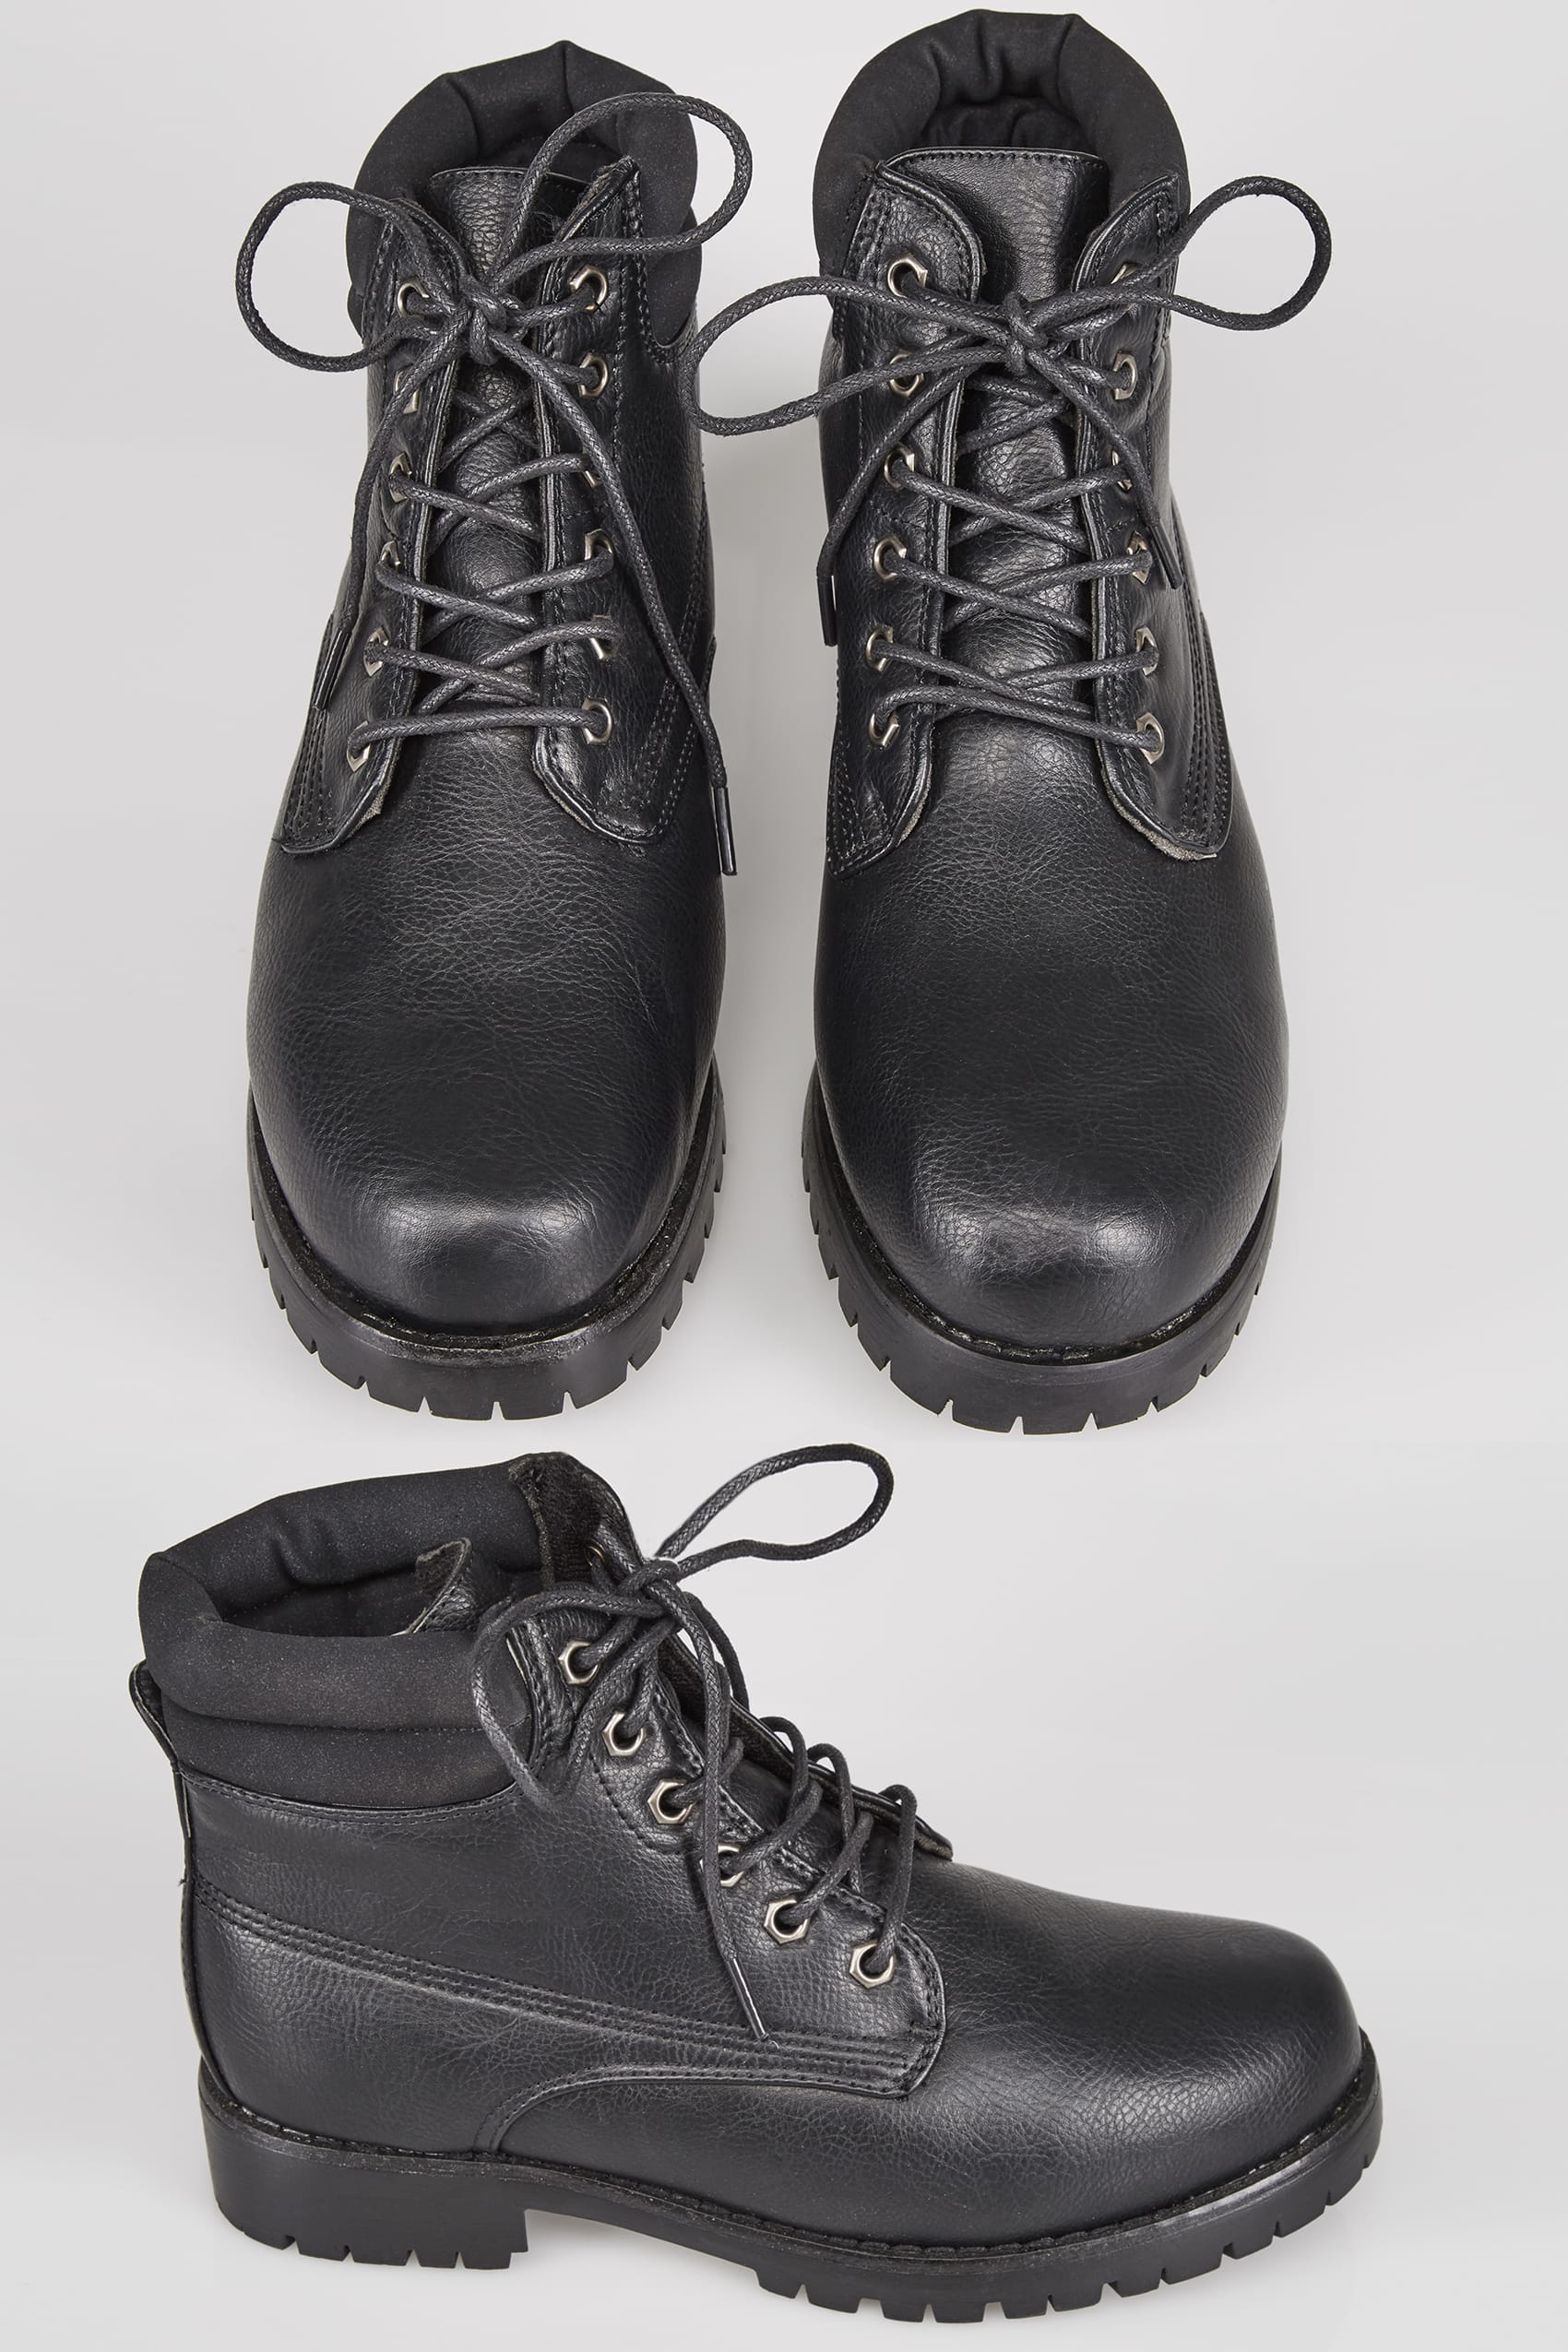 Black Buckled Ankle Boots In EEE Fit, Wide Fit 4EEE, 5EEE 